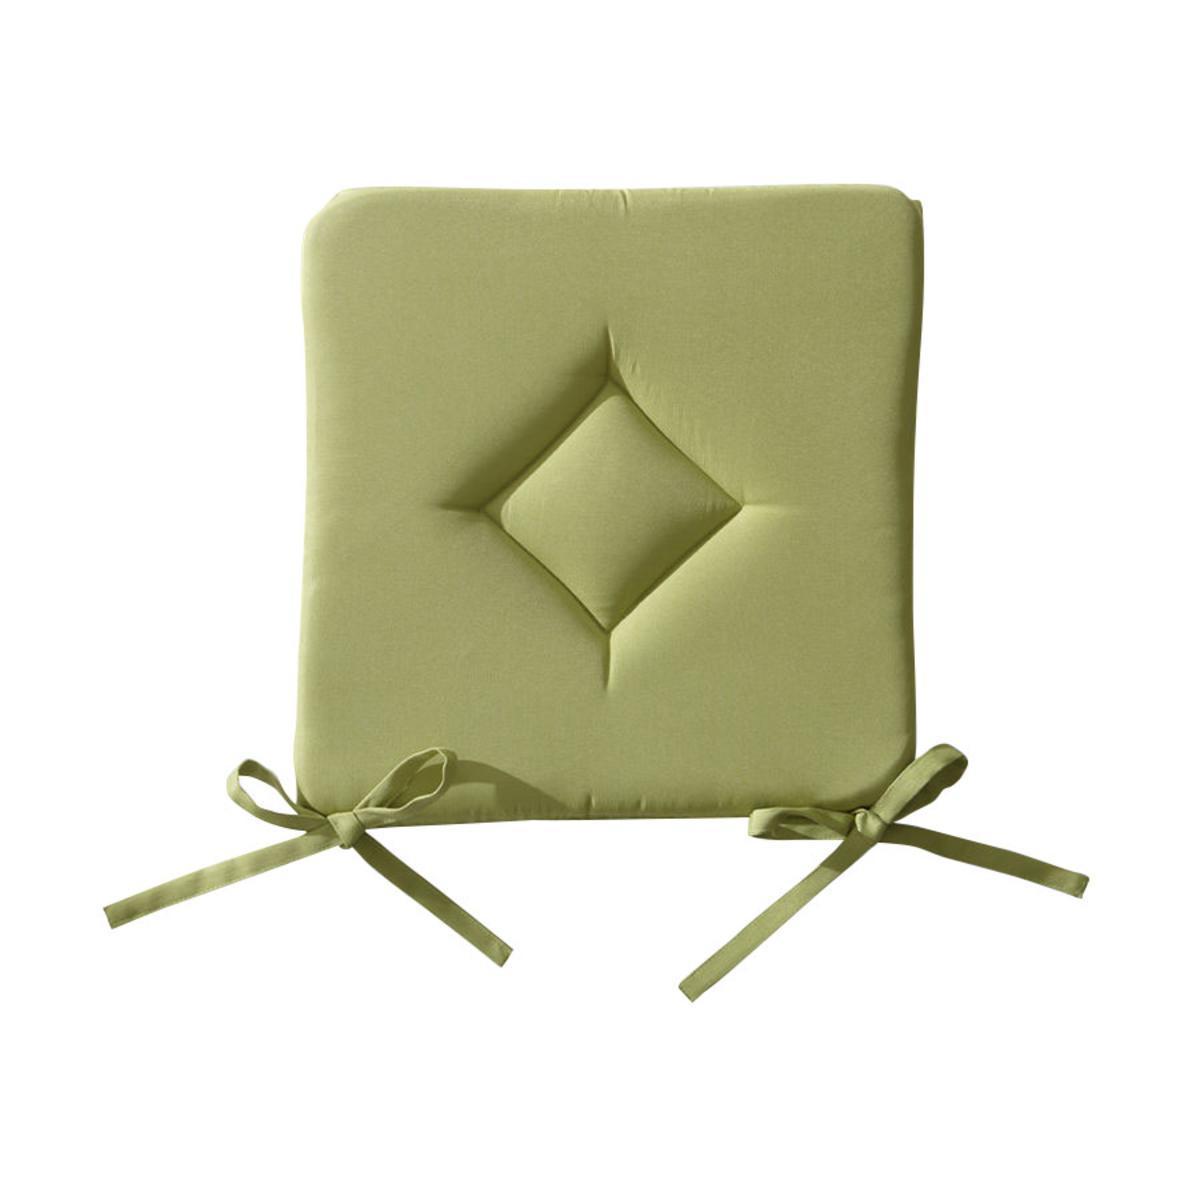 Galette de chaise en polyester - 40 cm x 40 cm x 3 cm - Vert